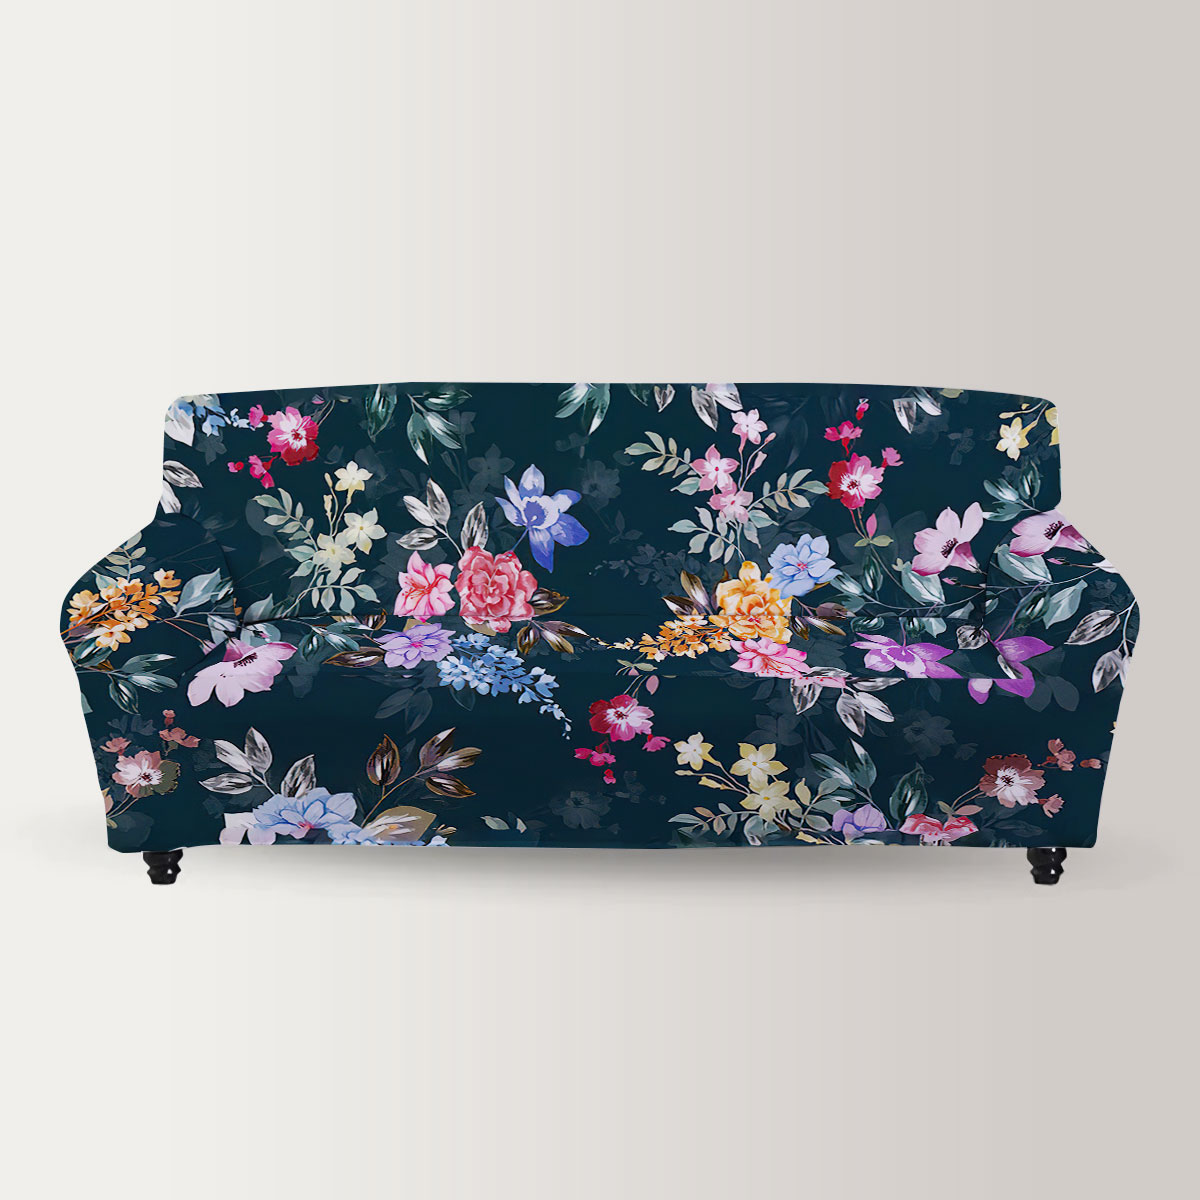 Retro Black Flower And Rose Sofa Cover